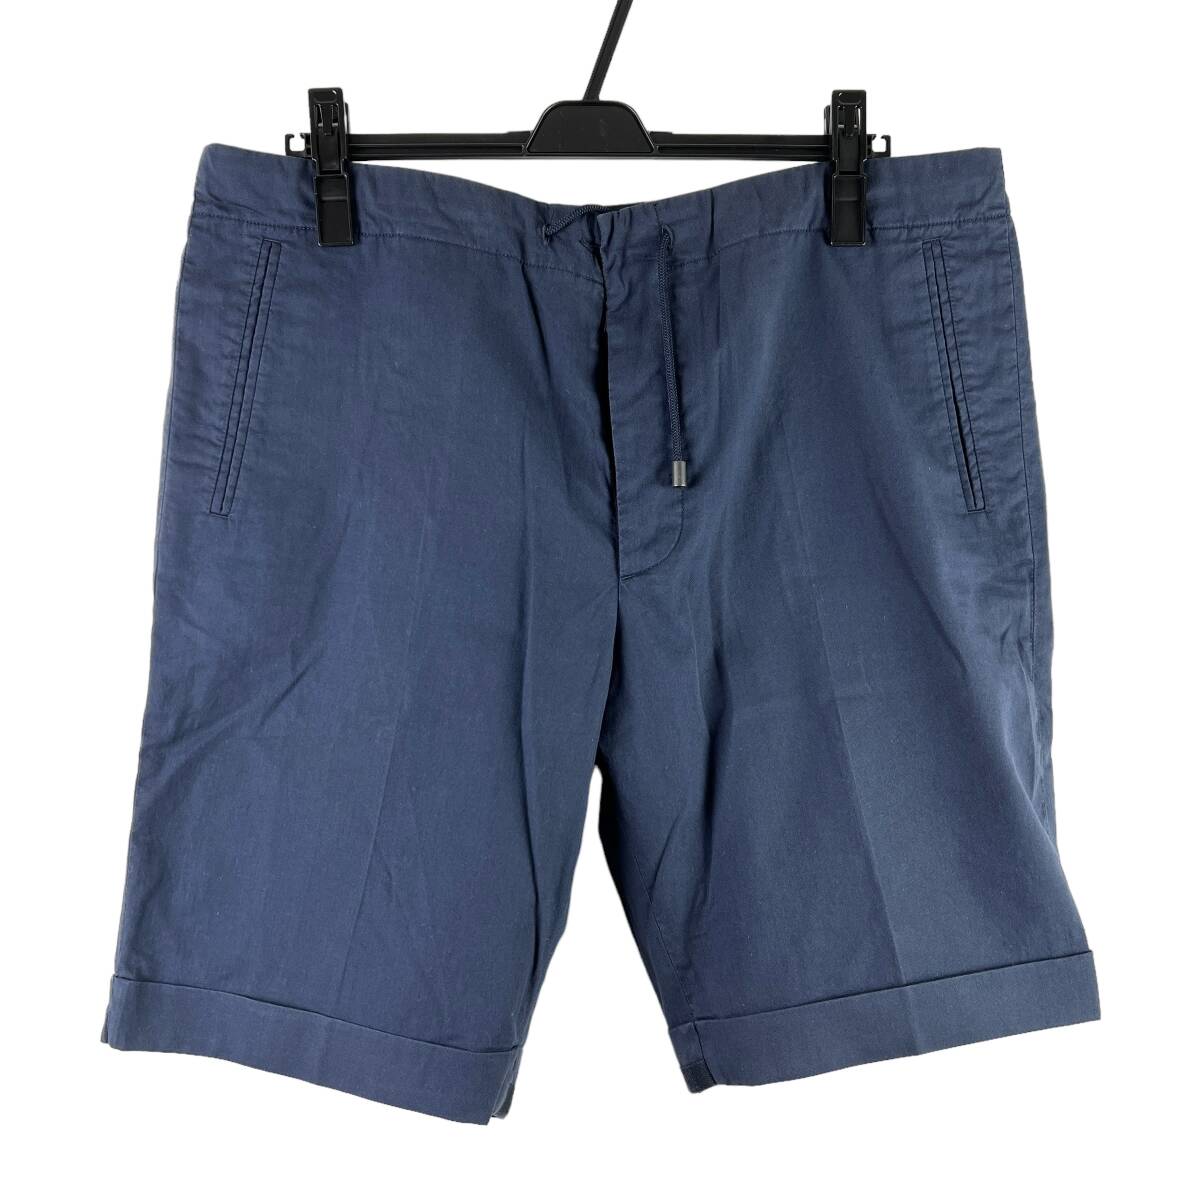 Maison Margiela (メゾン マルジェラ) Cotton Casual Short Pants 13SS (blue)_画像1